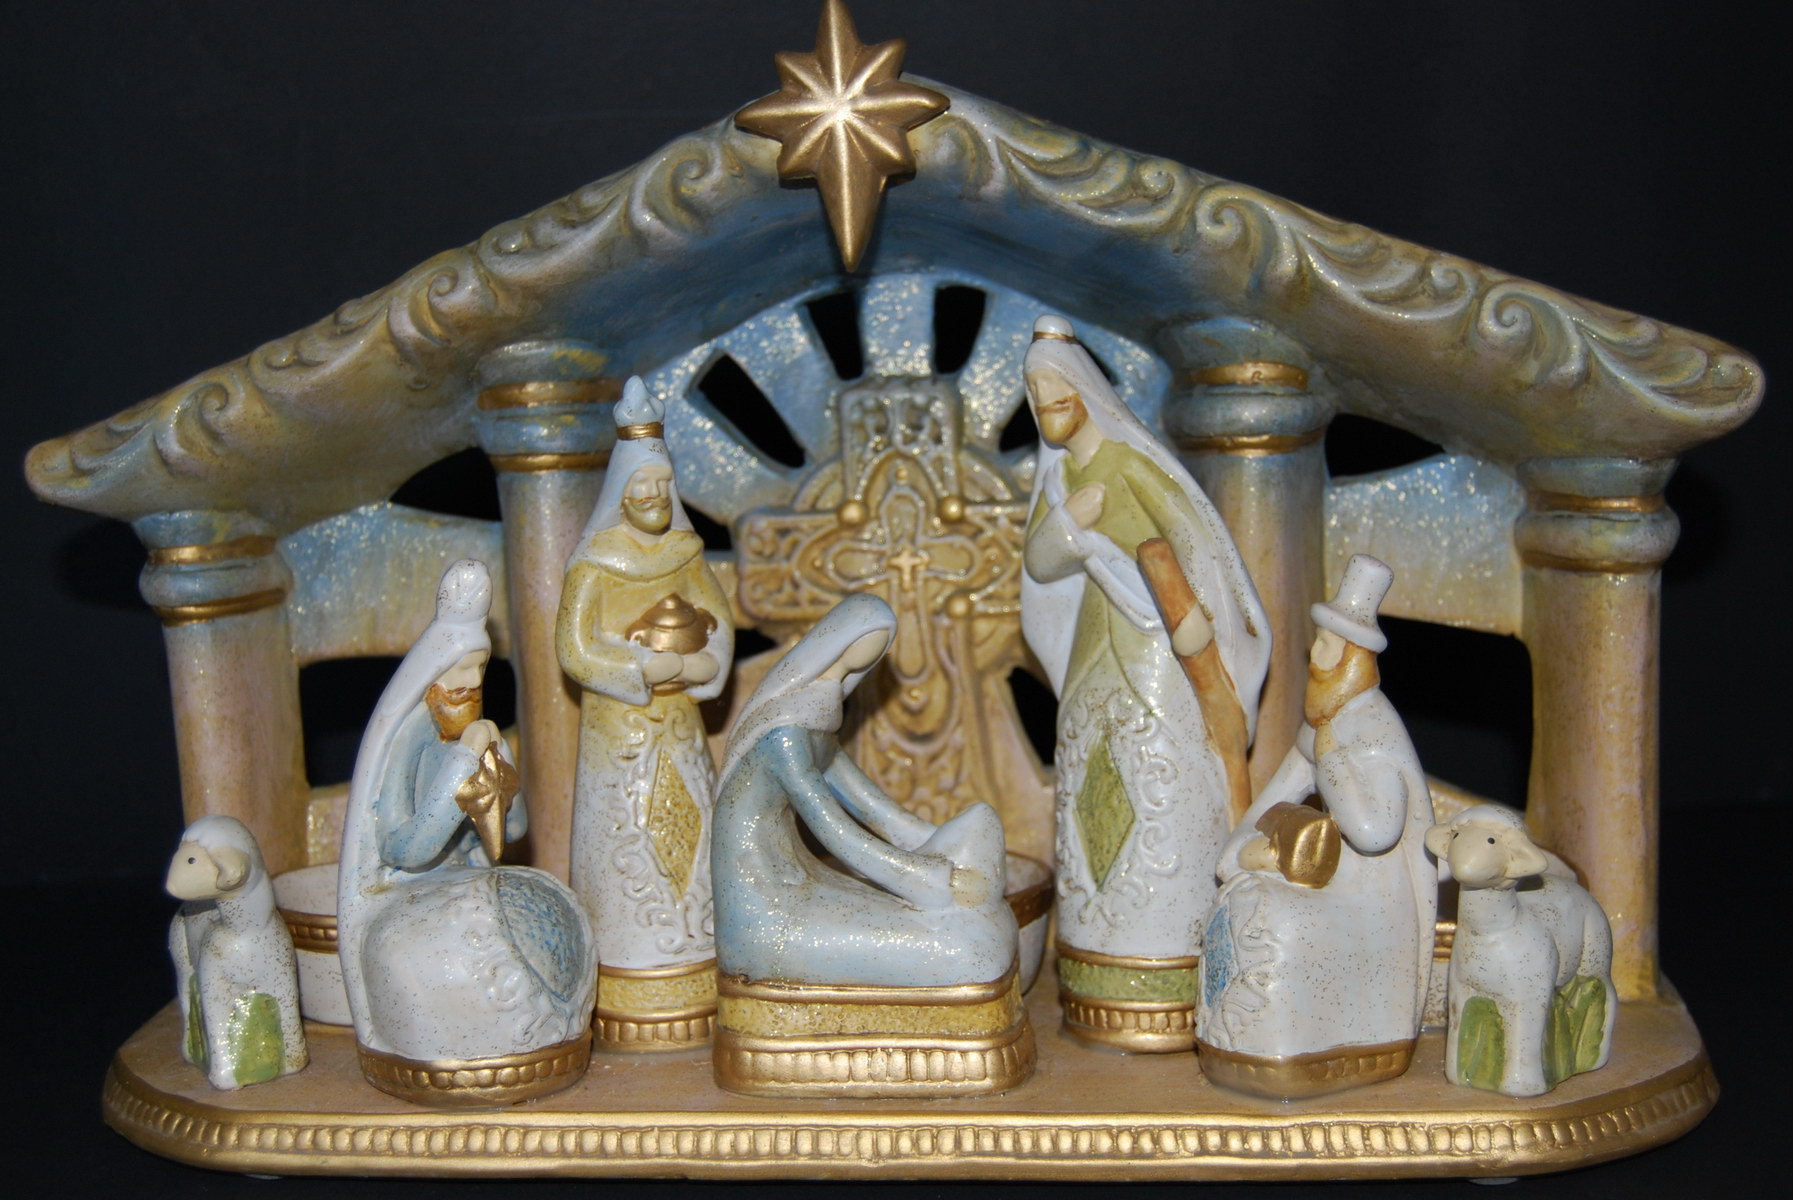 Eventi: a palazzo del Pegaso inaugurazione dei presepi ‘Natale nel mondo’